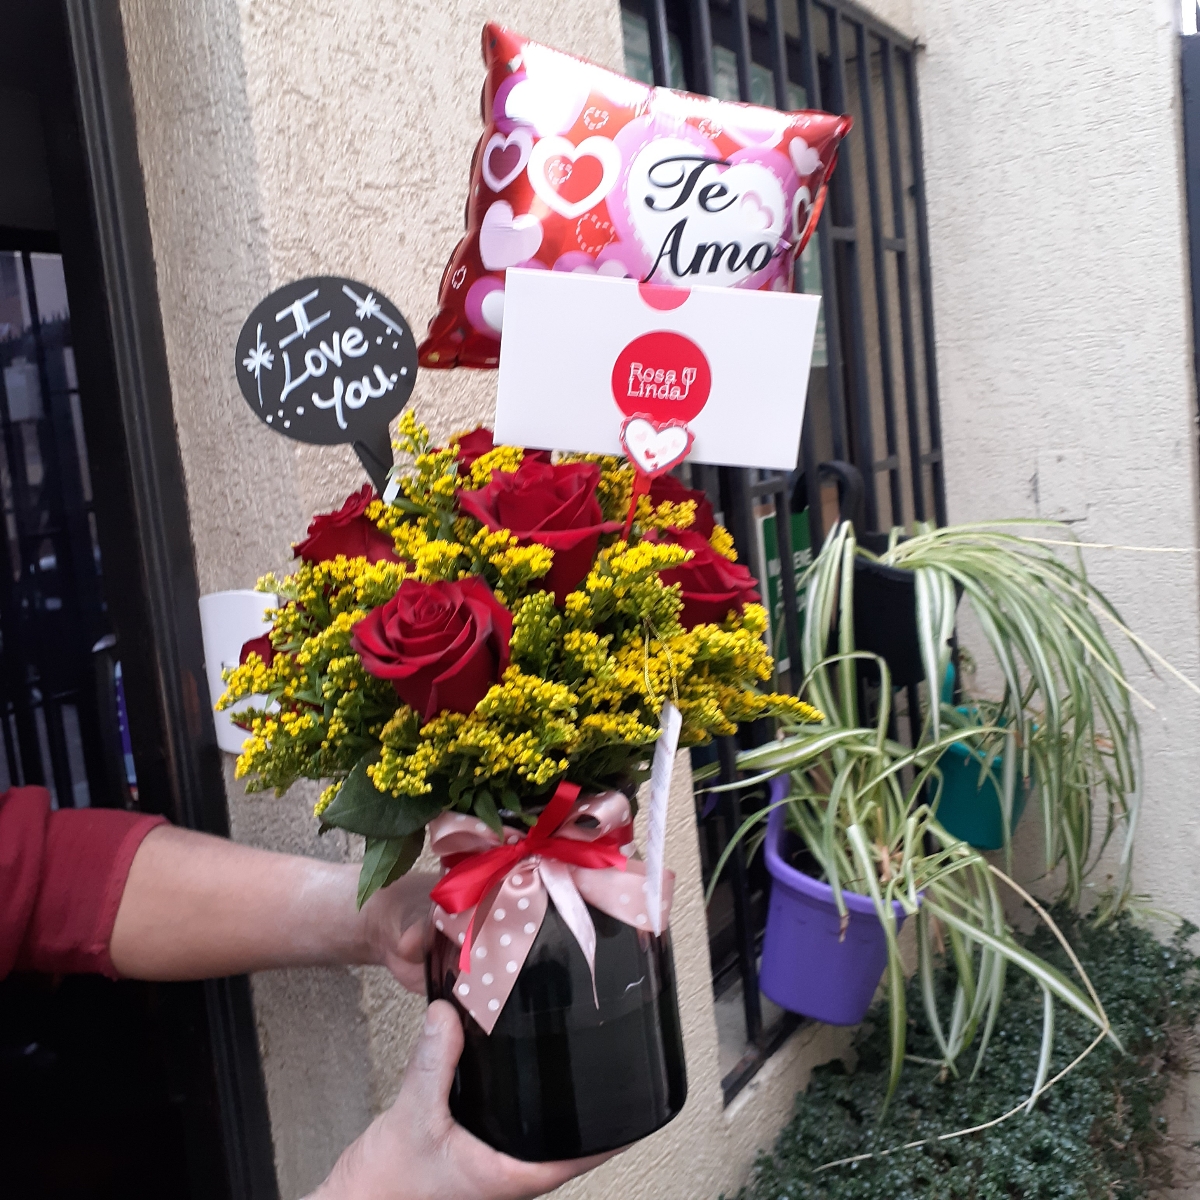 Caricias - Arreglo floral en florero con rosas ecuatorianas rojas, solidago y globo Te amo - Pedido 238512